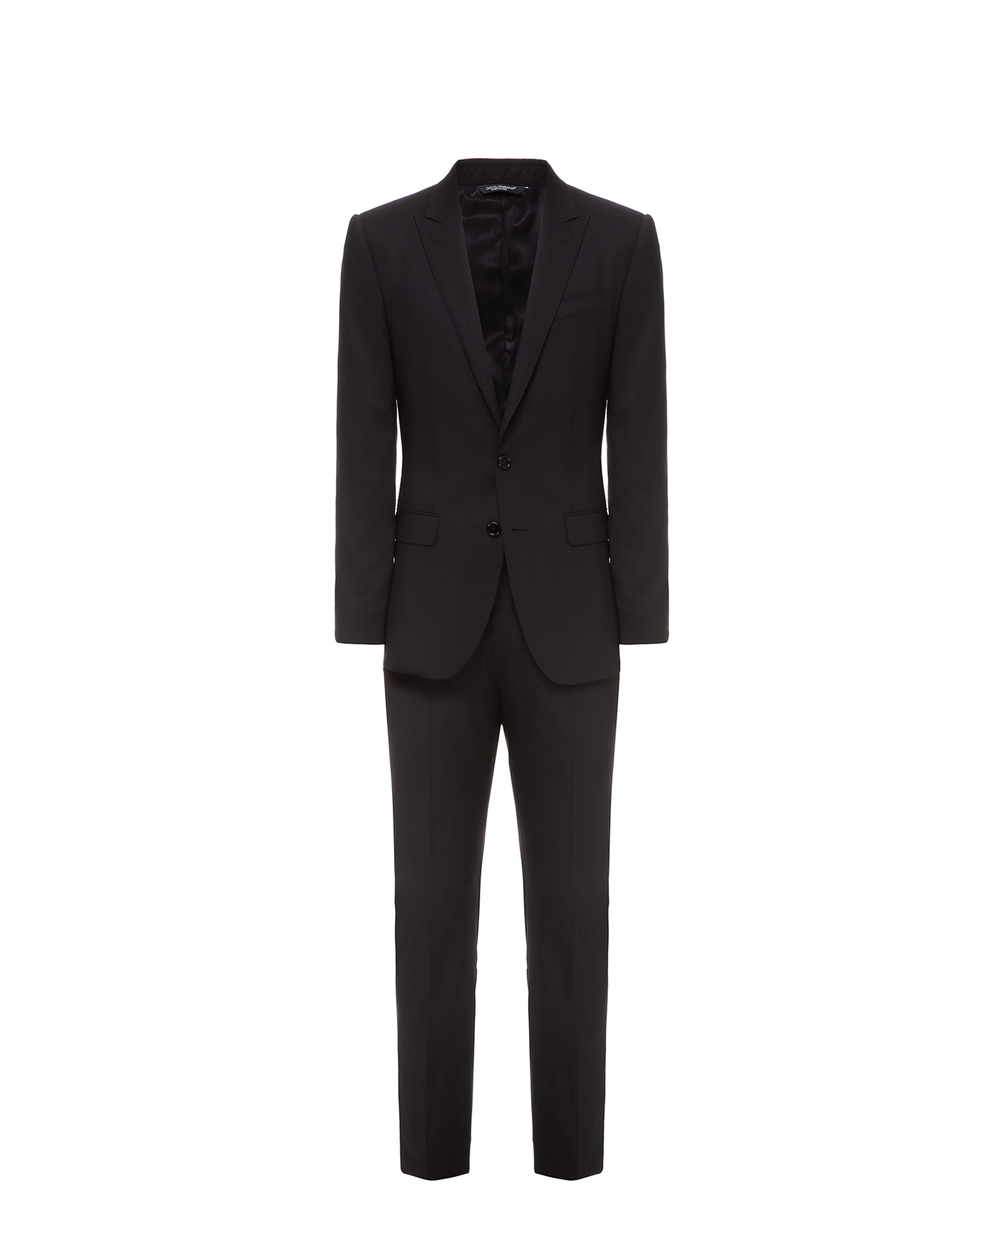 Шерстяной костюм Martini (пиджак, брюки) Dolce&Gabbana GK0RMT-FU3N7FW19, черный цвет • Купить в интернет-магазине Kameron